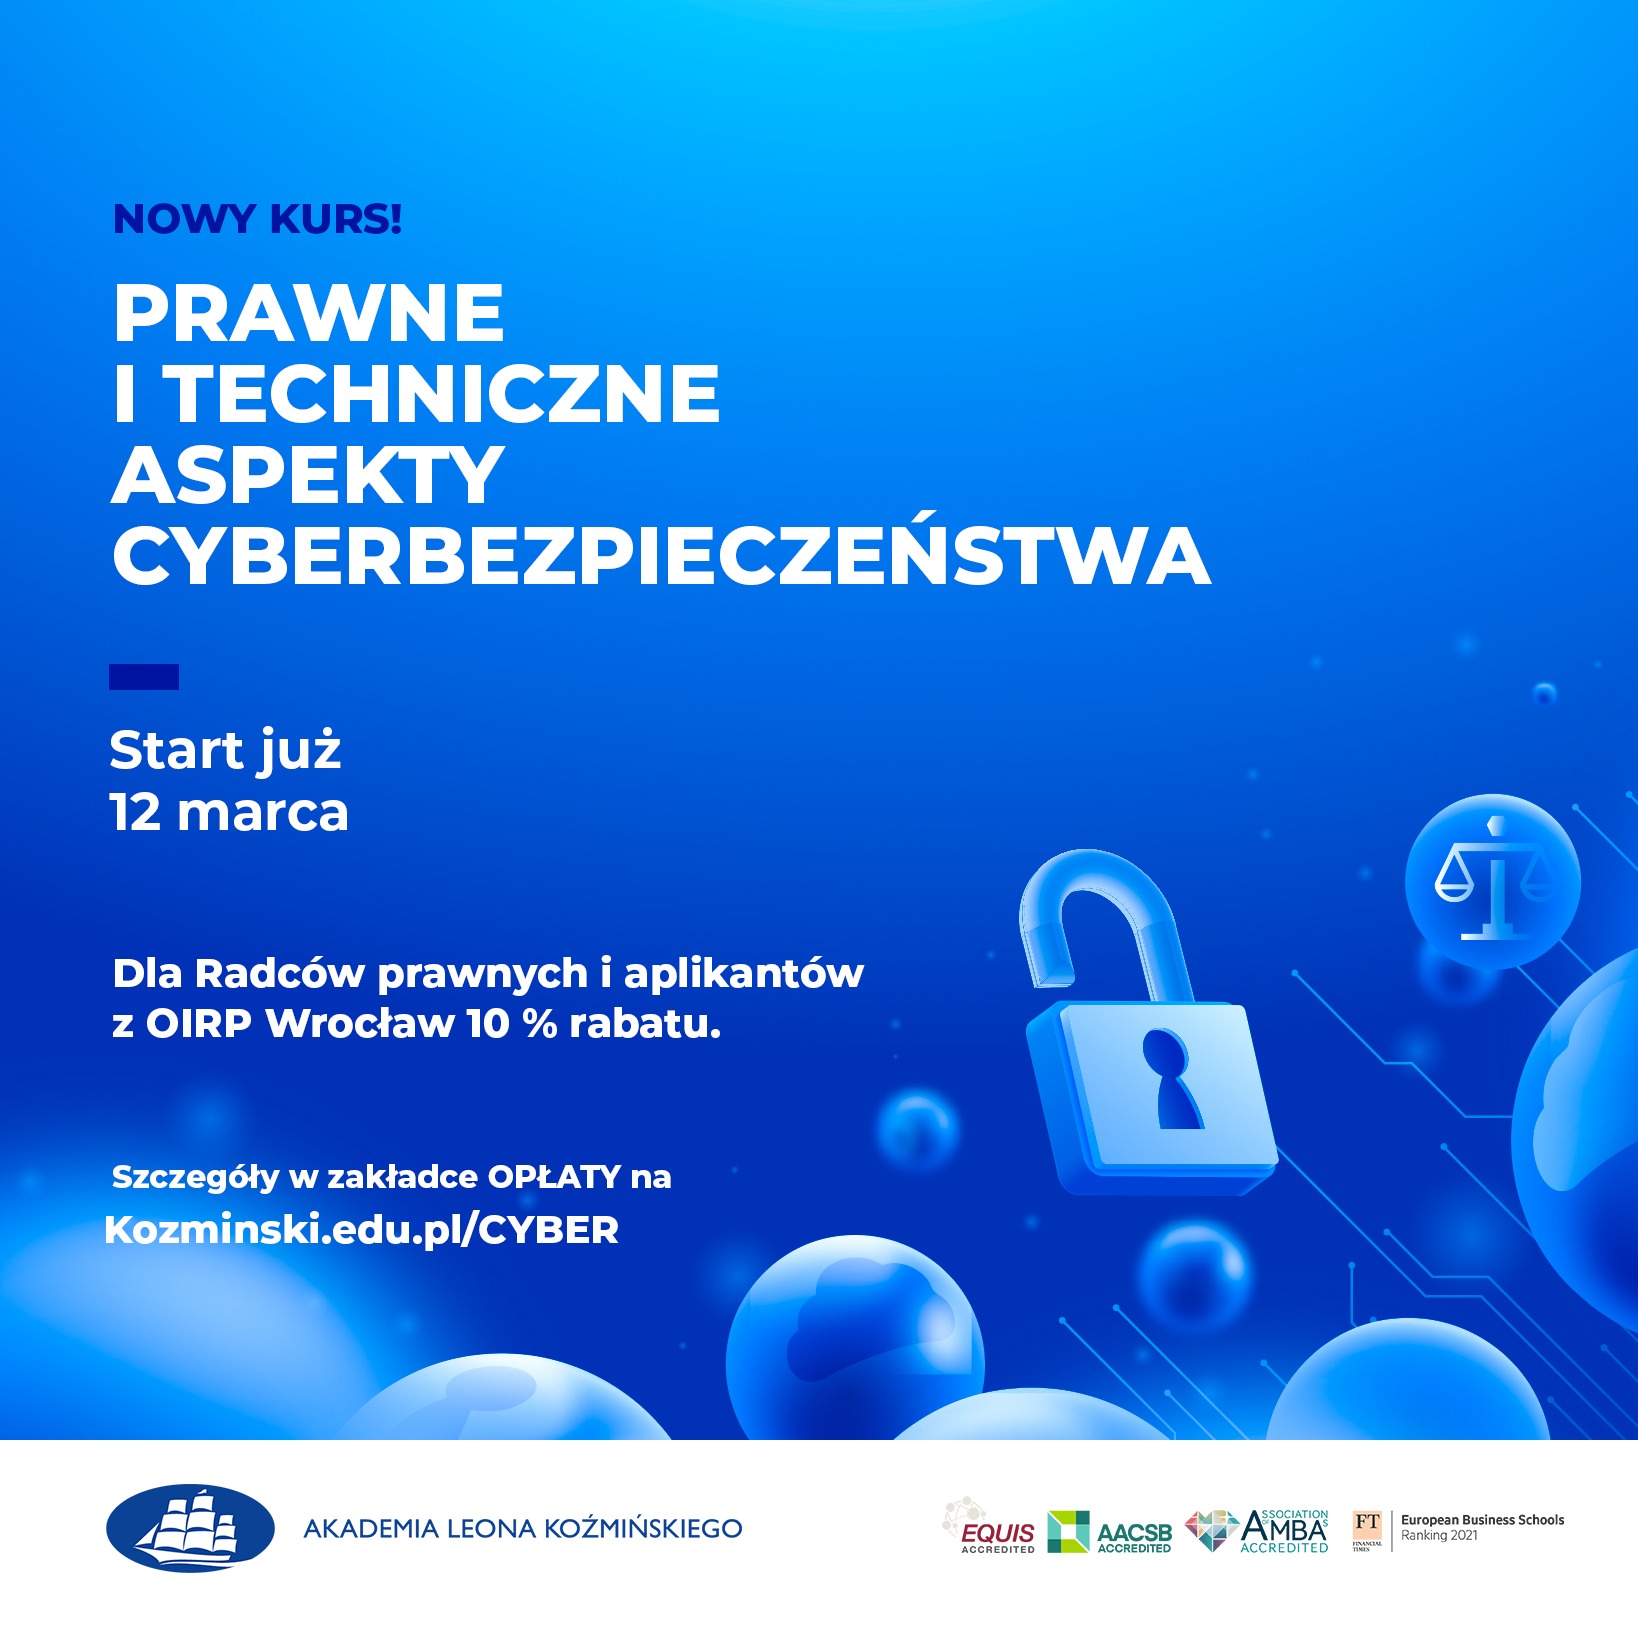 Kurs „Techniczne i Prawne aspekty Cyberbezpieczeństwa” – 10% rabatu dla radców prawnych i aplikantów radcowskich OIRP Wrocław